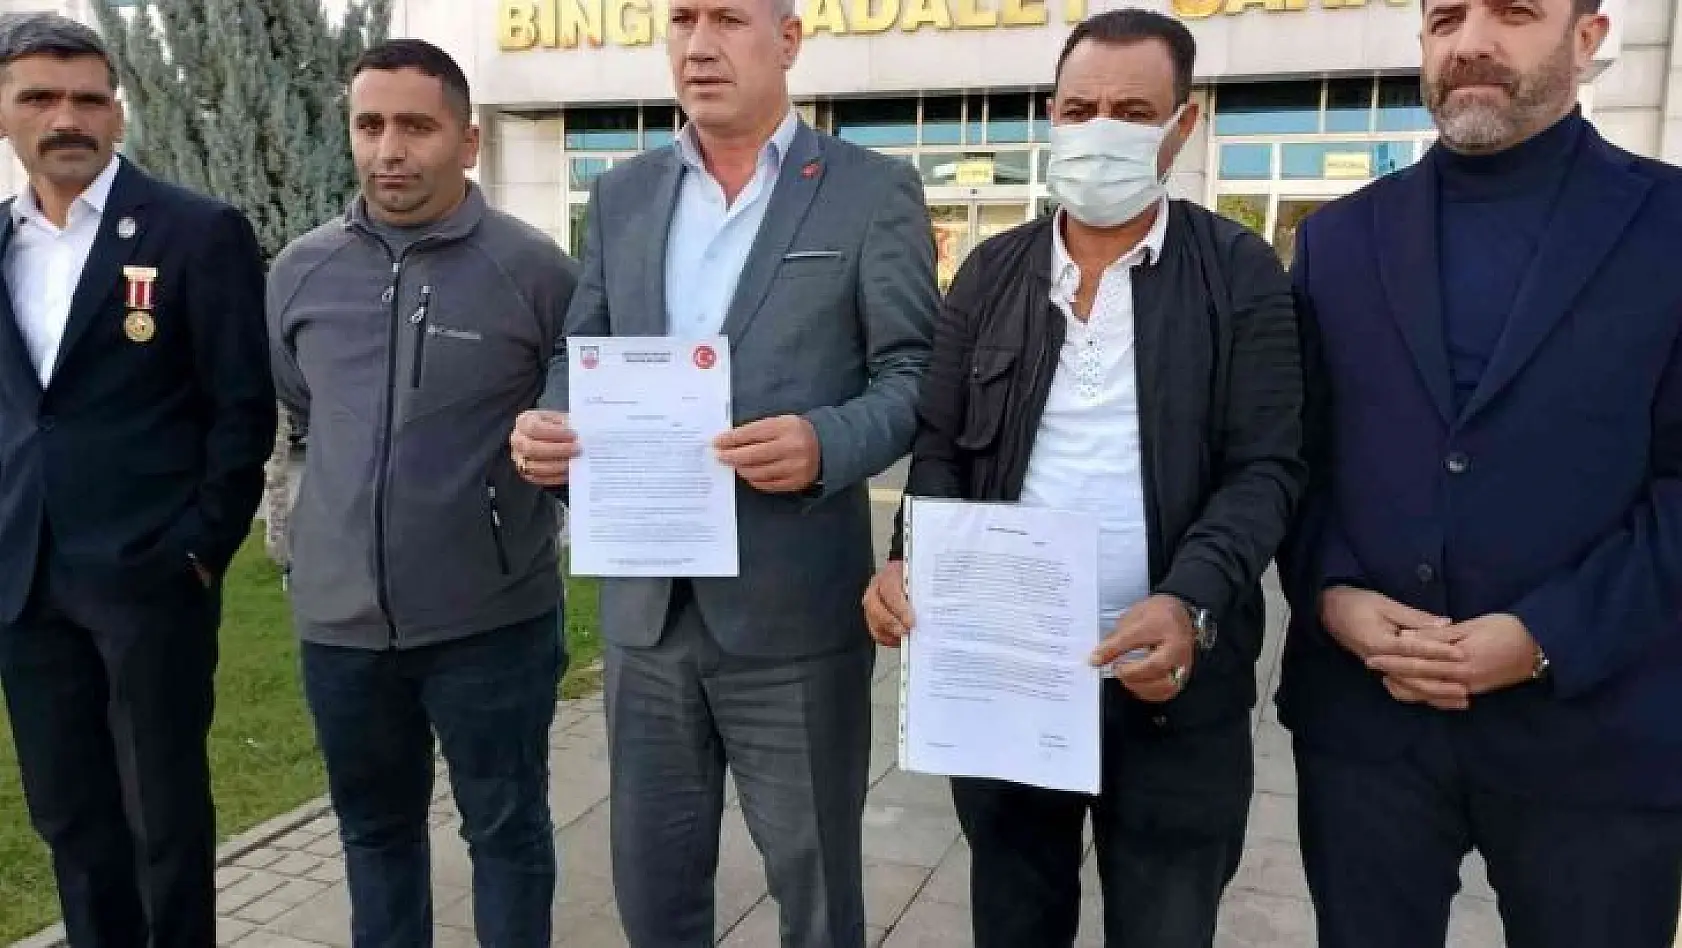 Bingöl'de Türkkan hakkında 1 kuruşluk dava açılması için suç duyurusunda bulunuldu